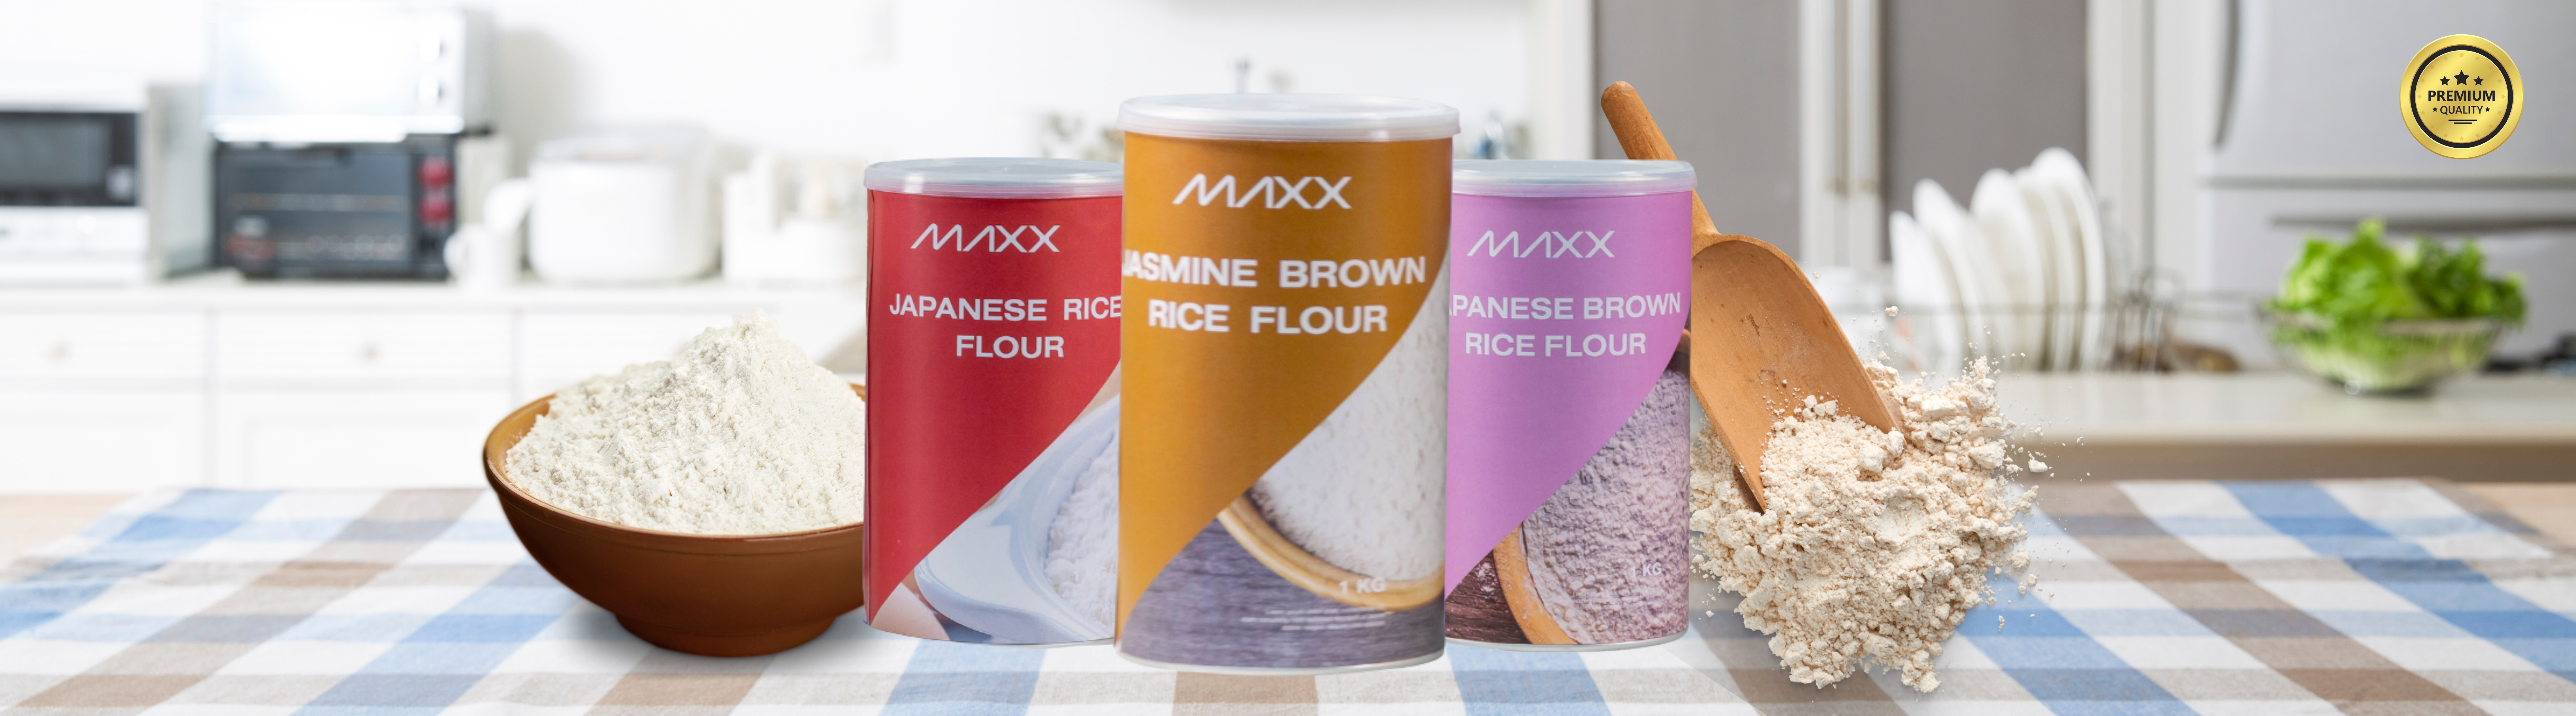 Maxx Rice Flour2